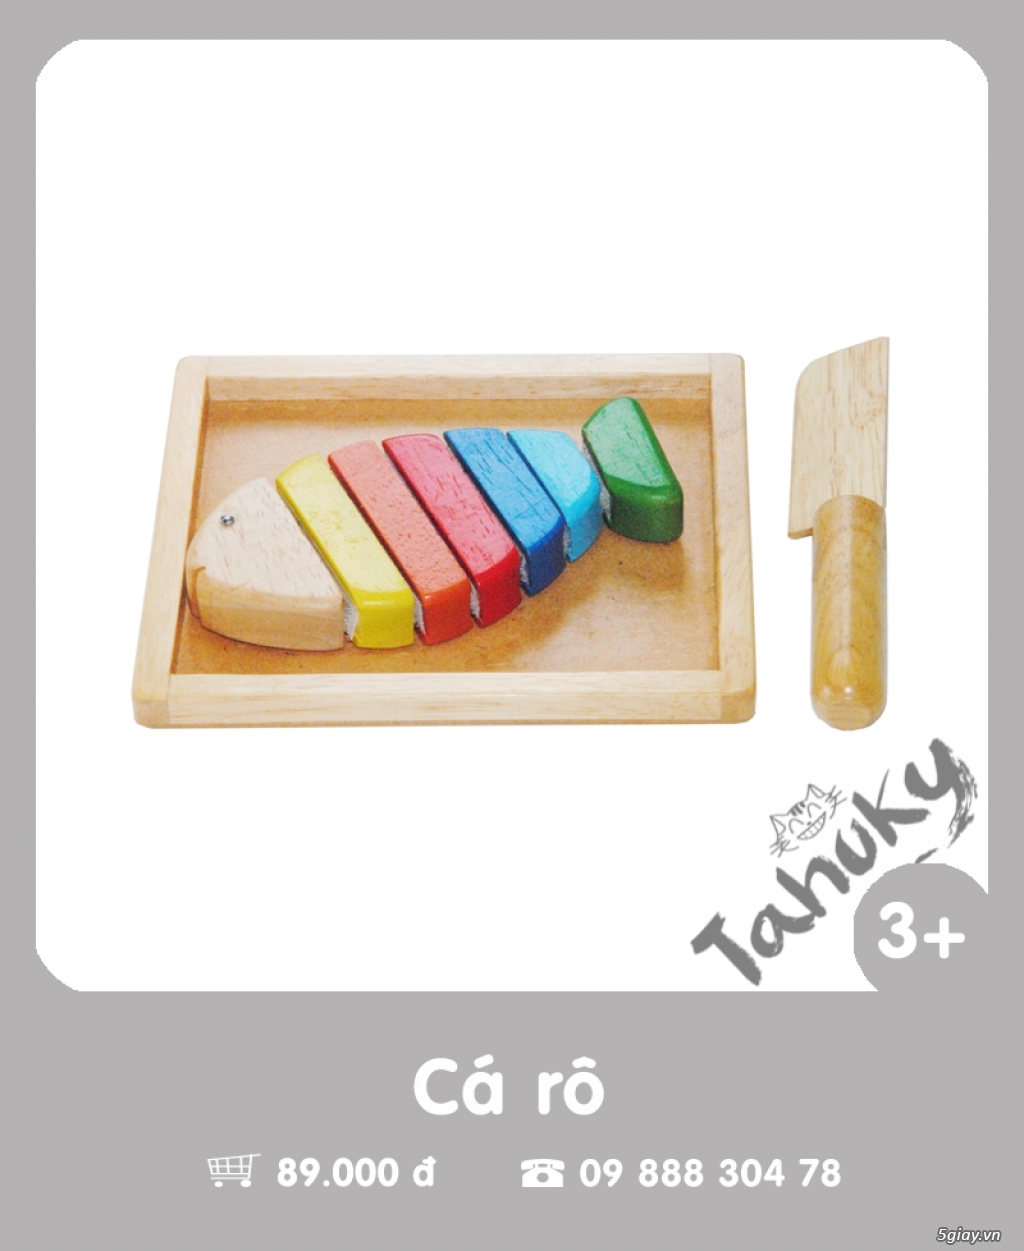 Đồ chơi gỗ an toàn Tahuky (dành cho bé từ 3-5 tuổi) - 22